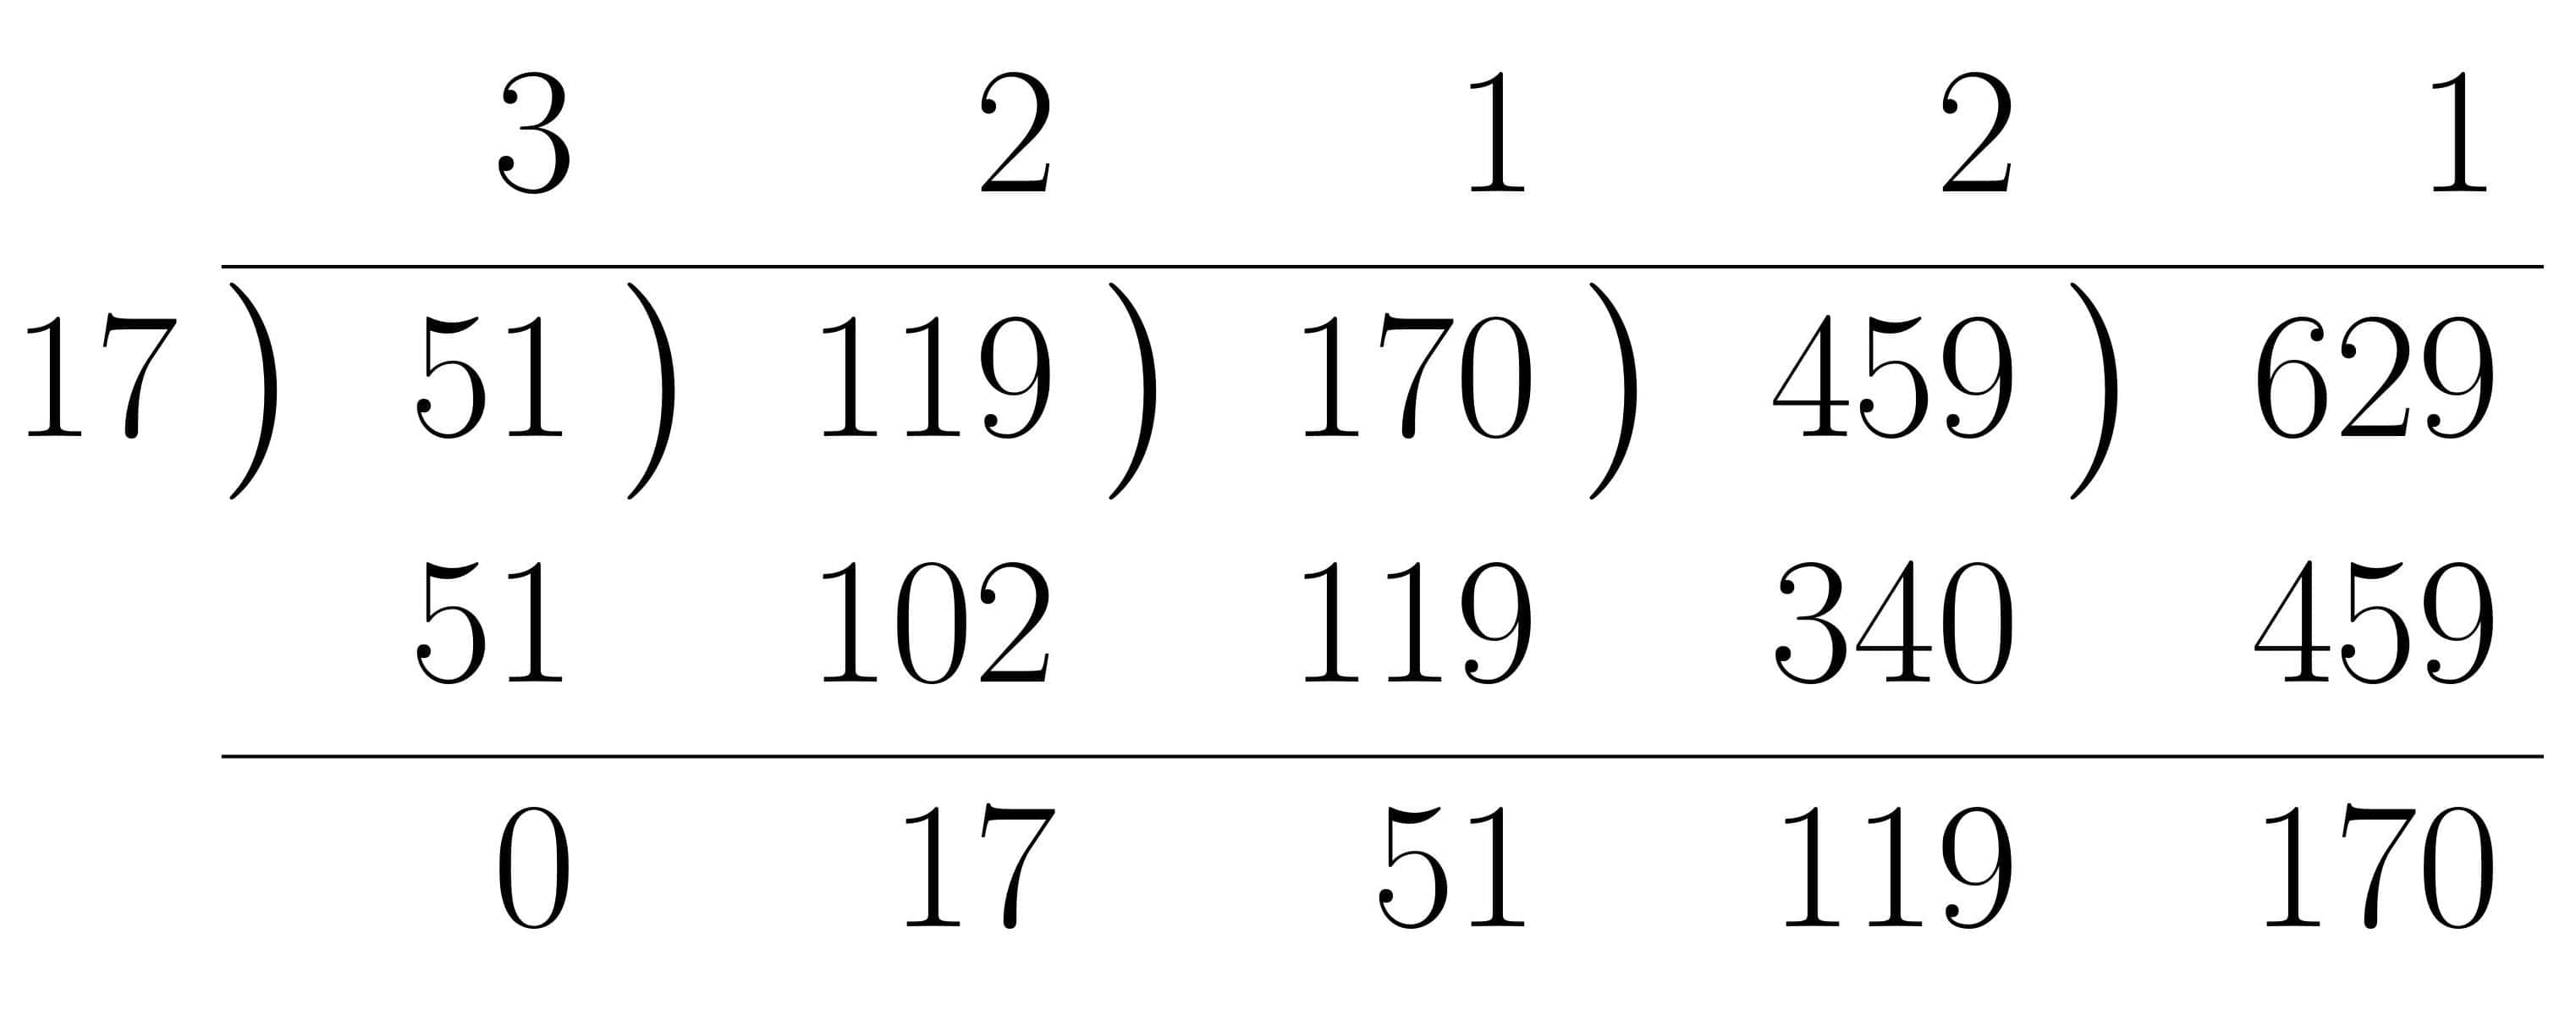 ユークリッドの互除法による最大公約数の求め方の計算法練習2